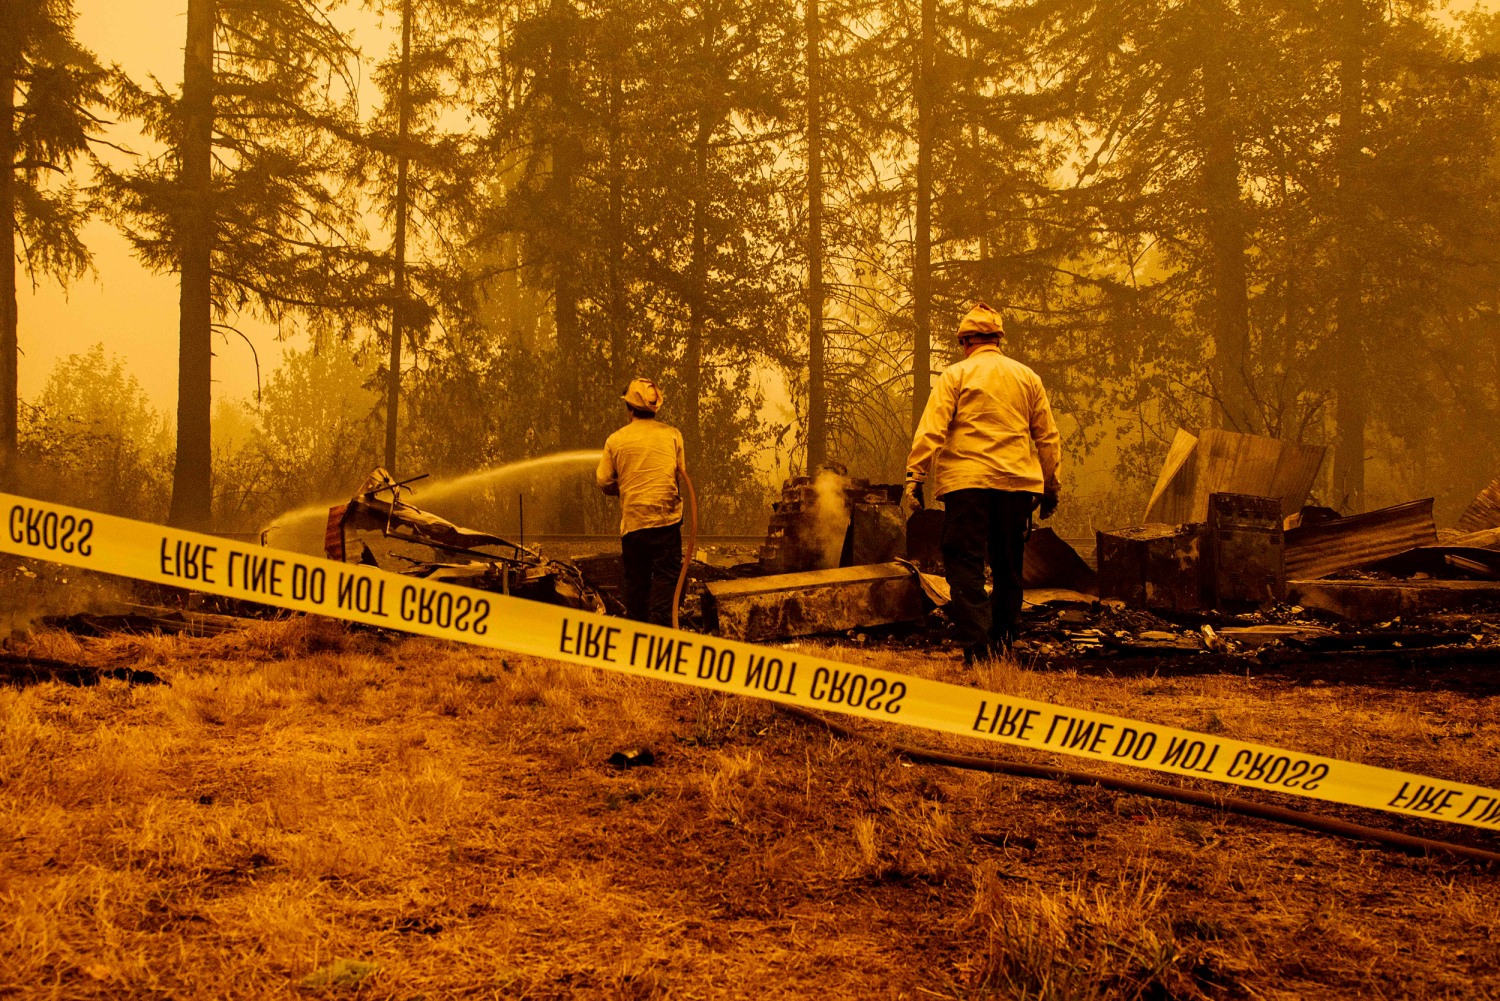 Incendies dans l'Oregon : la rumeur complotiste sur des pyromanes antifas  démentie par les autorités - Conspiracy Watch